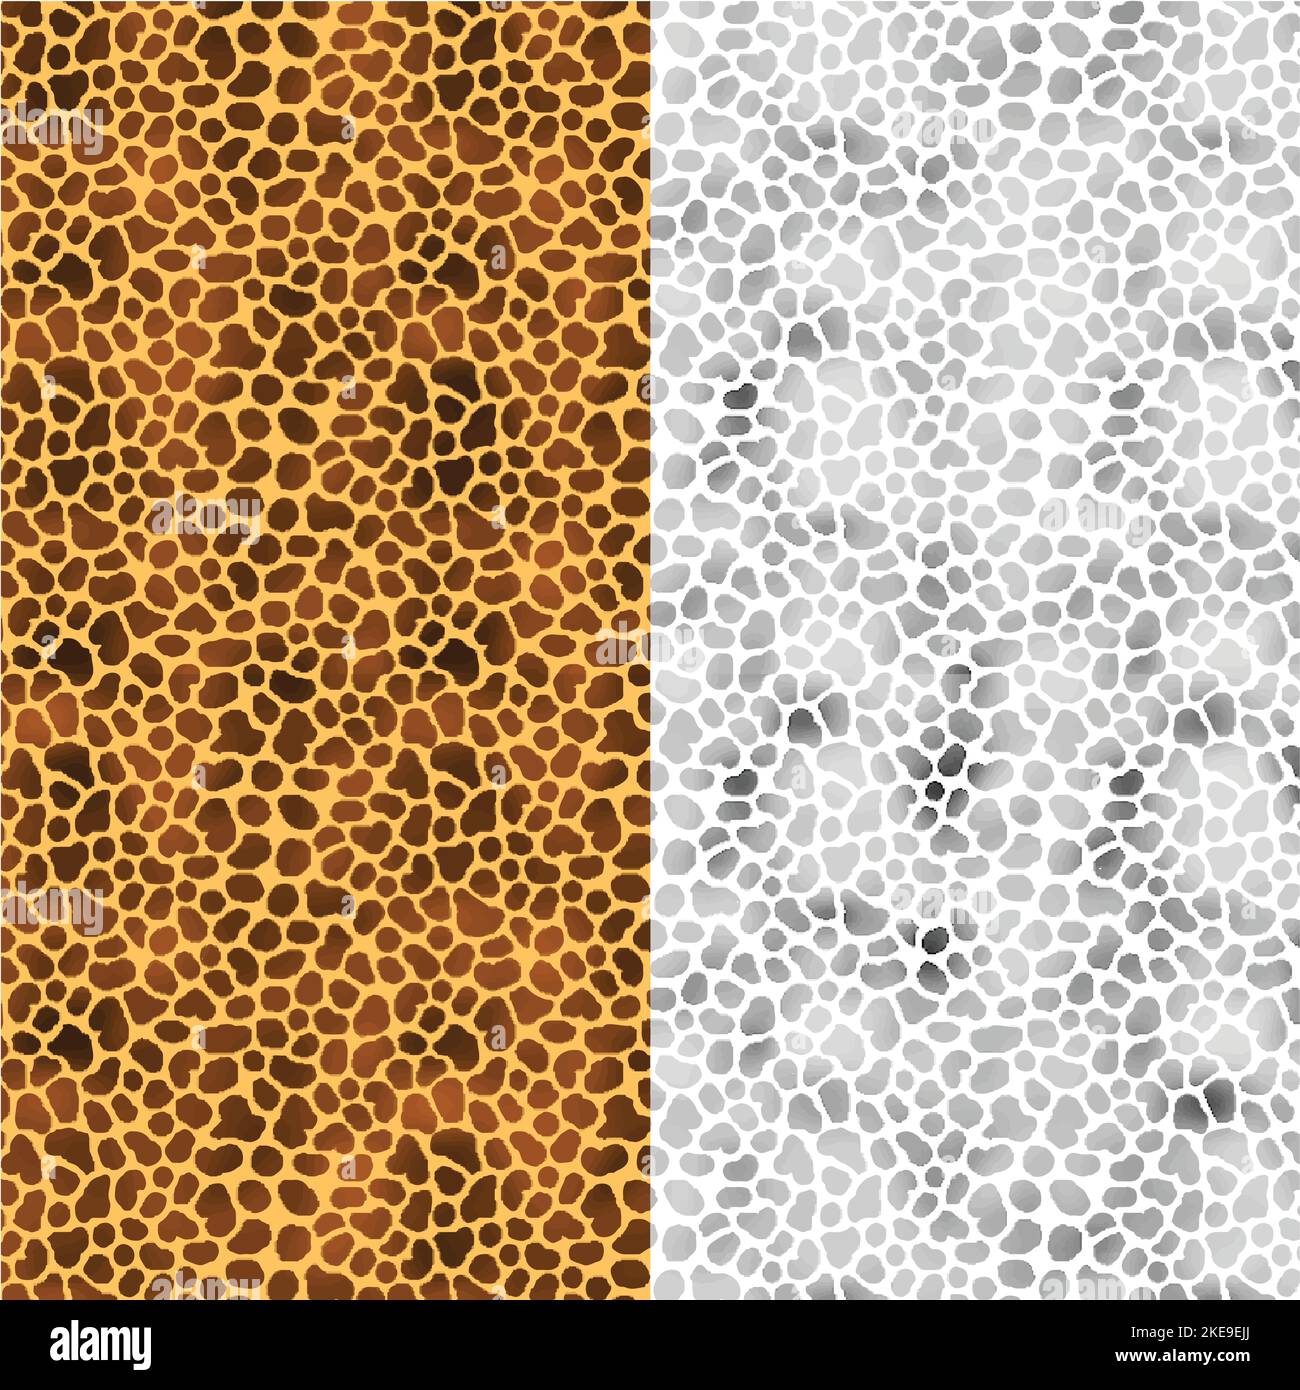 Camouflage nahtlose Muster Hintergrund. Nahtloses Muster aus Leoparden-, Ozelot- oder Wildkatzenpelz. Tierhaut stilisierte Vektor-Hintergrund. Stock Vektor